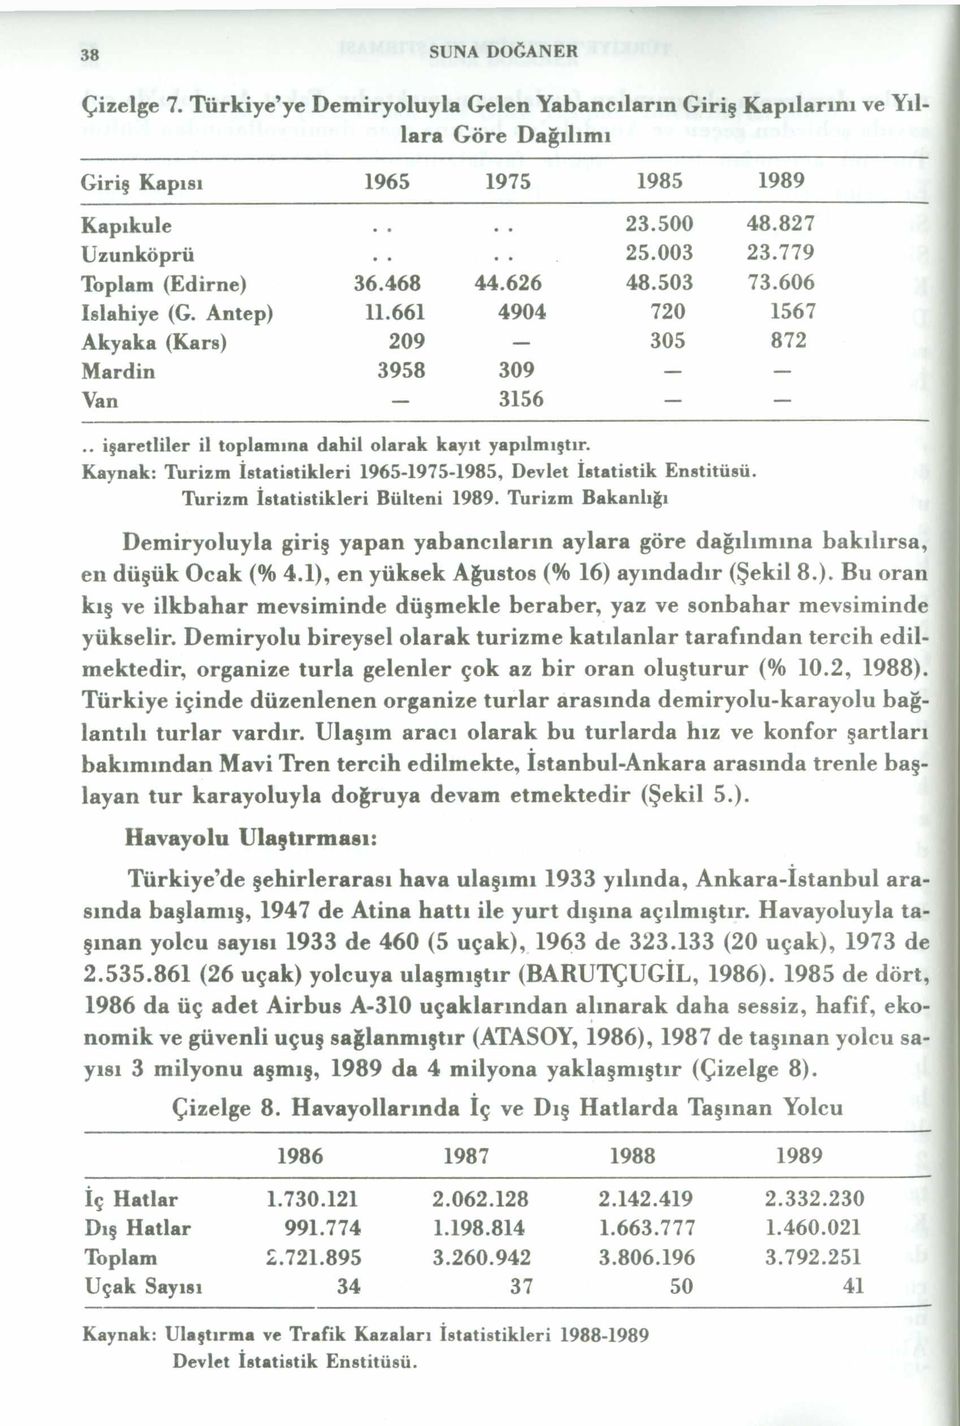 Kaynak: Turizm İstatistikleri 1965-1975-1985, Devlet İstatistik Enstitüsü. Turizm İstatistikleri Bülteni 1989.